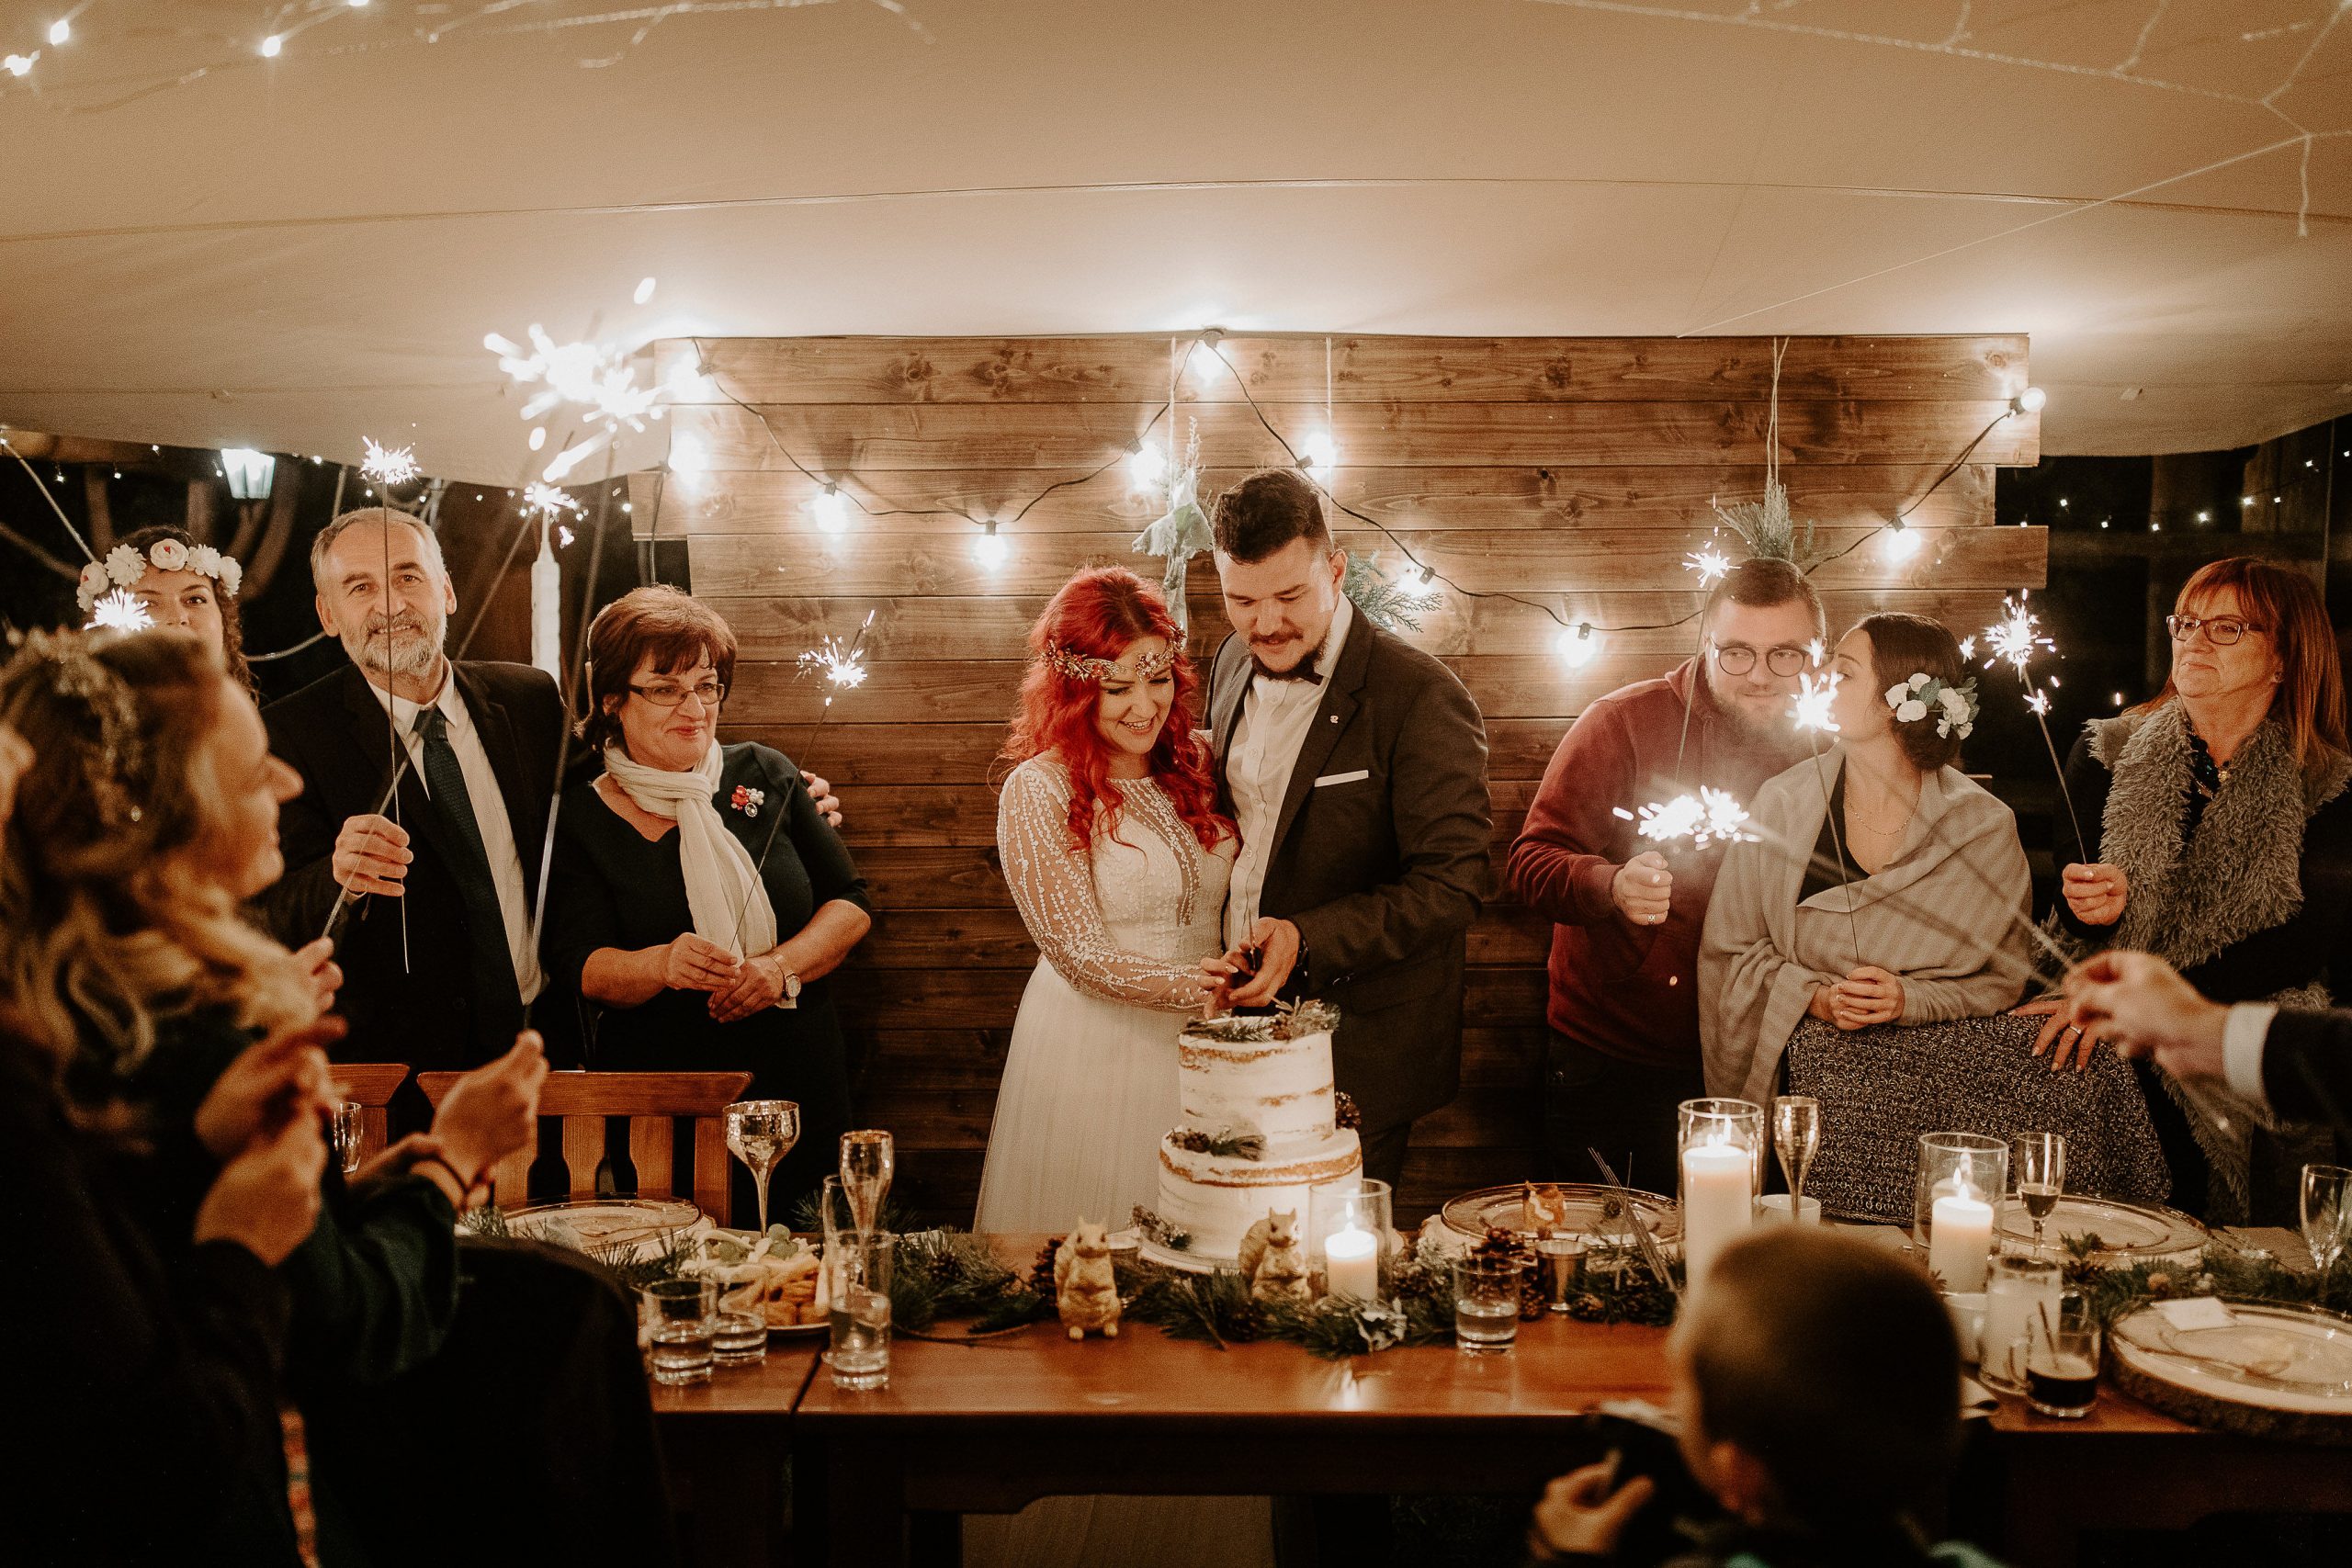 Susan&Sis decor – rozpravkova lesna svadba – blog o prirodnej svadbe – svadba MEMO photo agency – Eri a Matt – nahe prestieranie stola, ihlicie a sisky, svetielka, krajanie torty